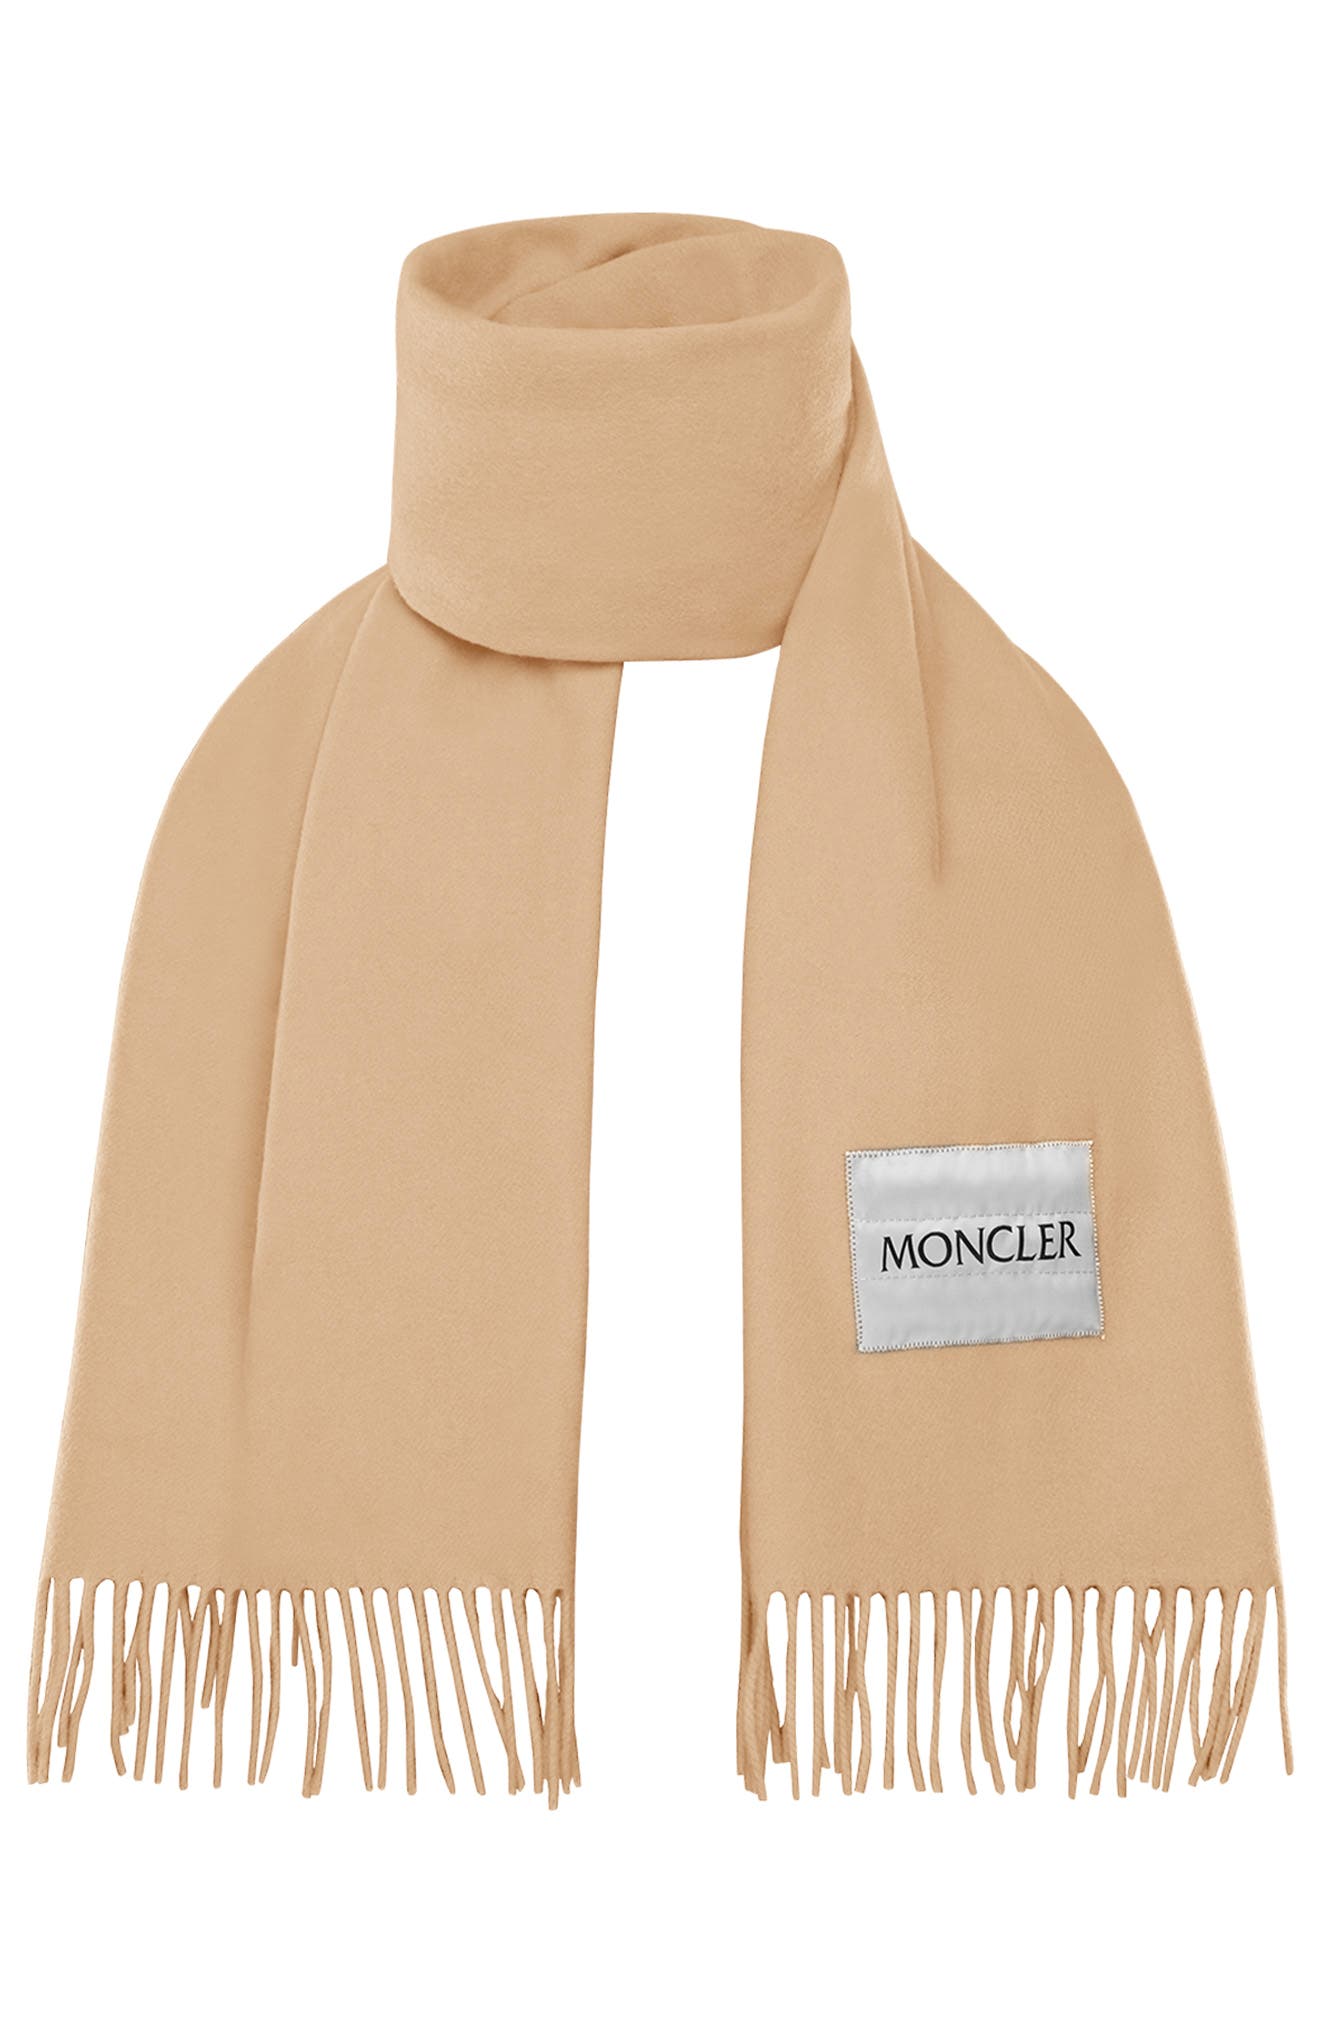 moncler scarves